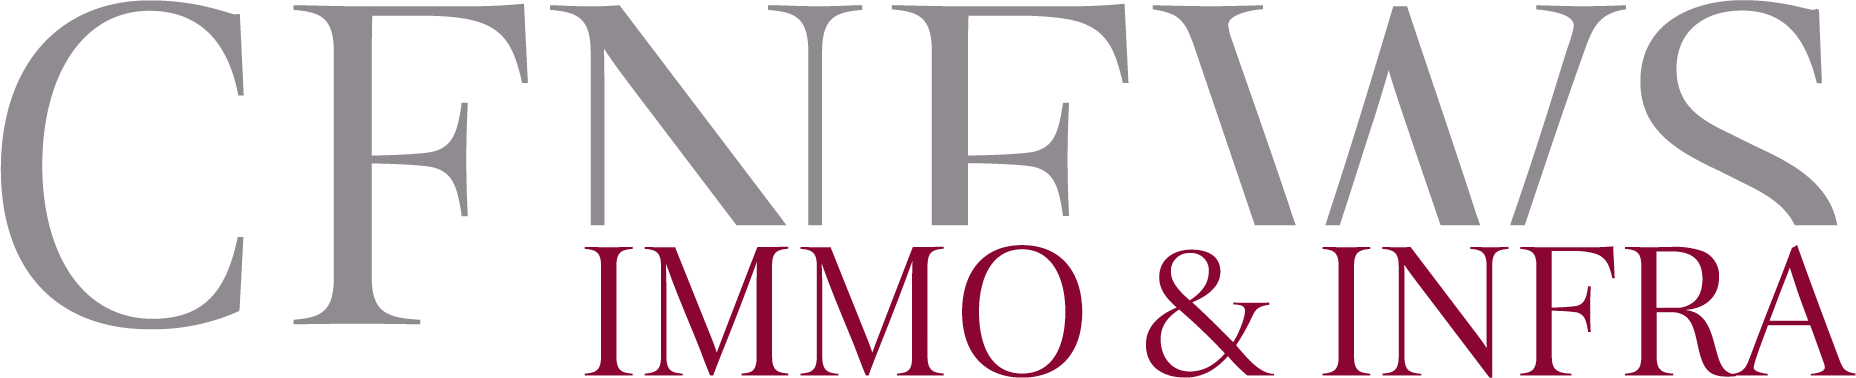 Logo de CFNews immo